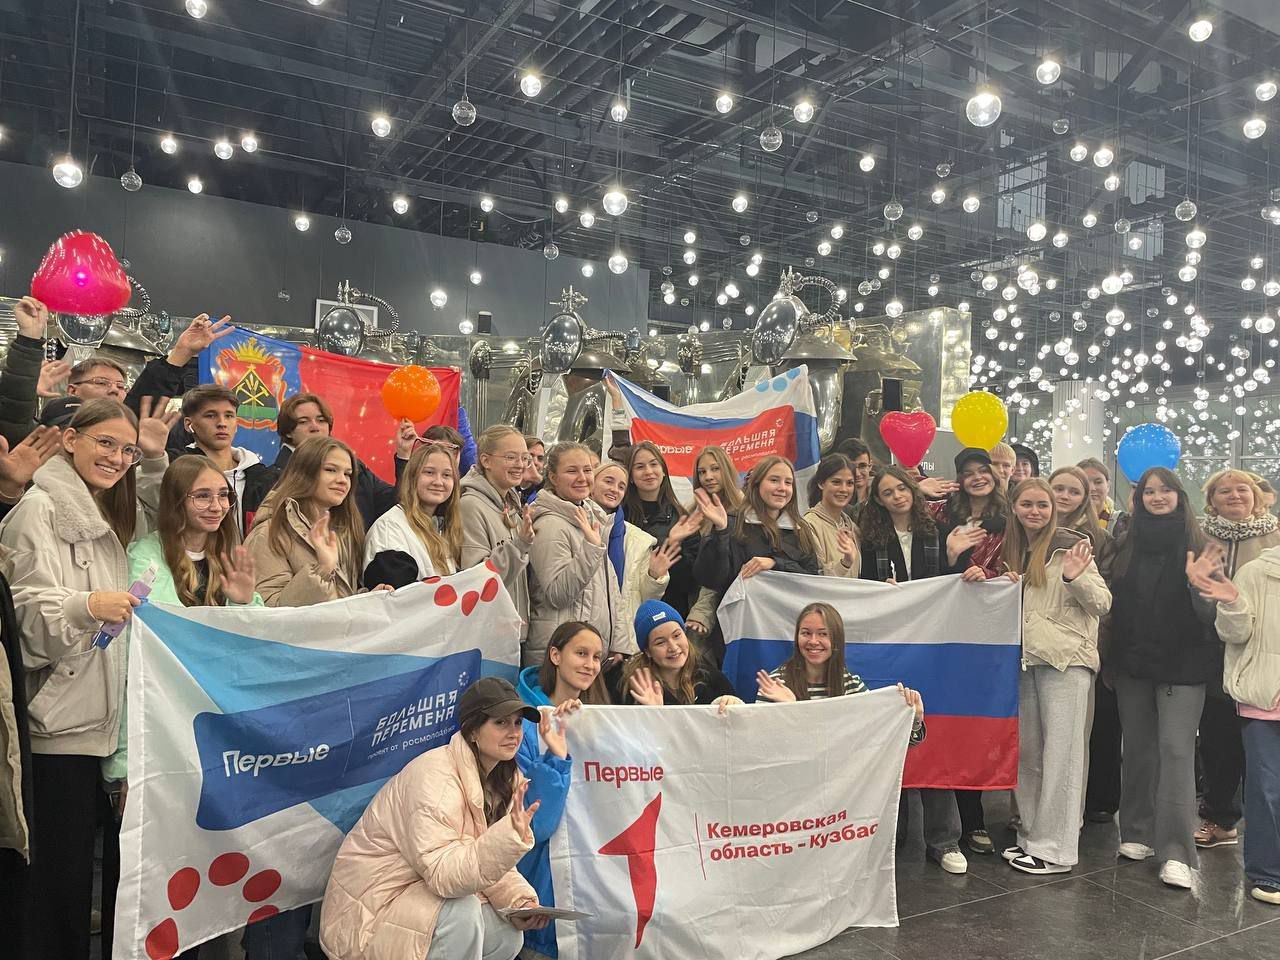 36 кузбасских школьников участвуют в финале всероссийского конкурса «Большая перемена», который проходит в международном детском центре «Артек»